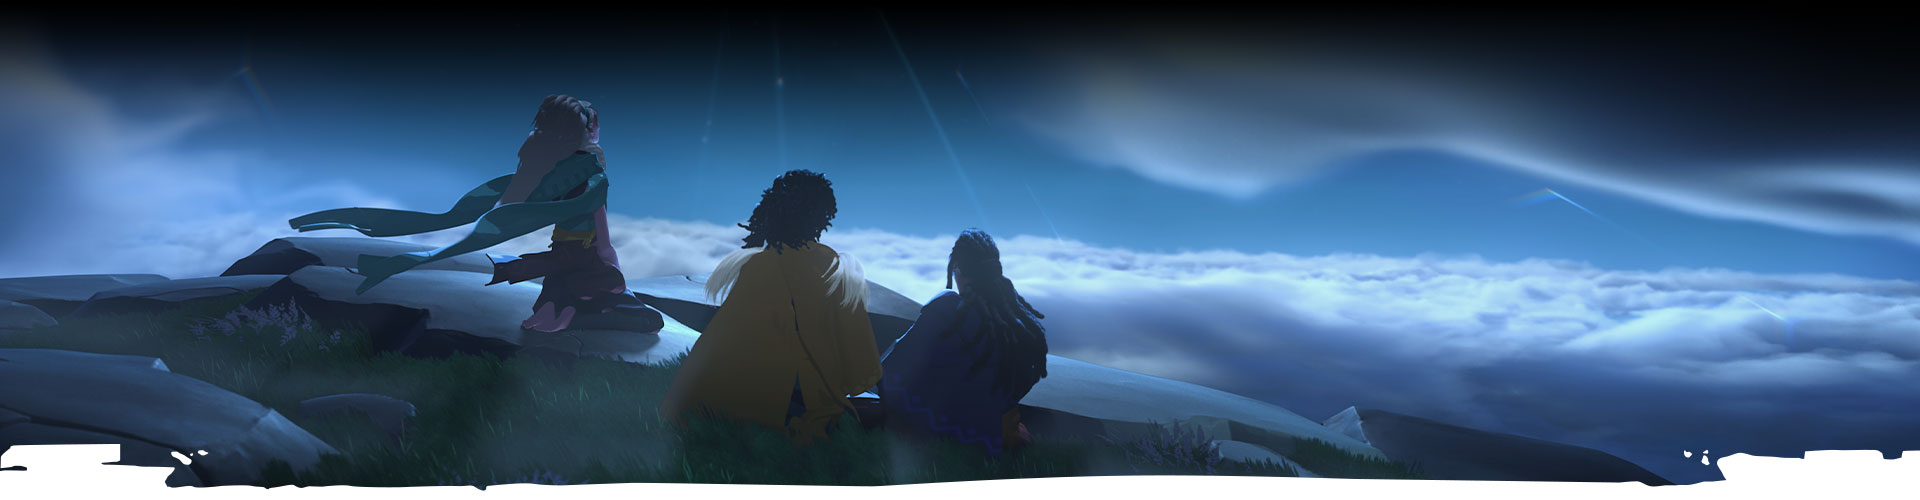 Три персонажа смотрят в ночное небо. 